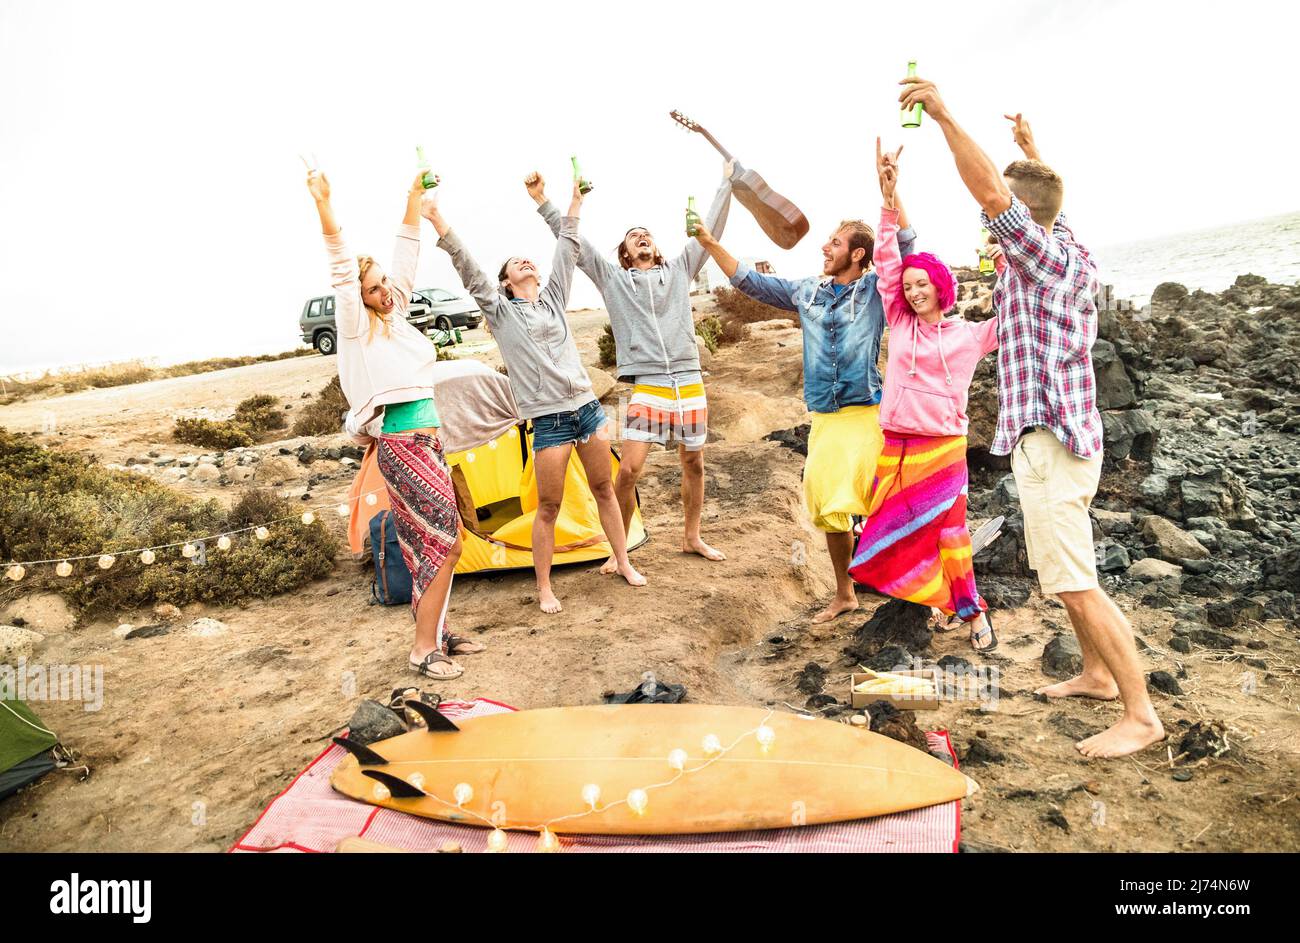 Hippie-Freunde haben Spaß zusammen am Strand Camping Musik-Party - Freundschaftsreisekonzept mit jungen Menschen Wanderer tanzen und Bier trinken auf s Stockfoto